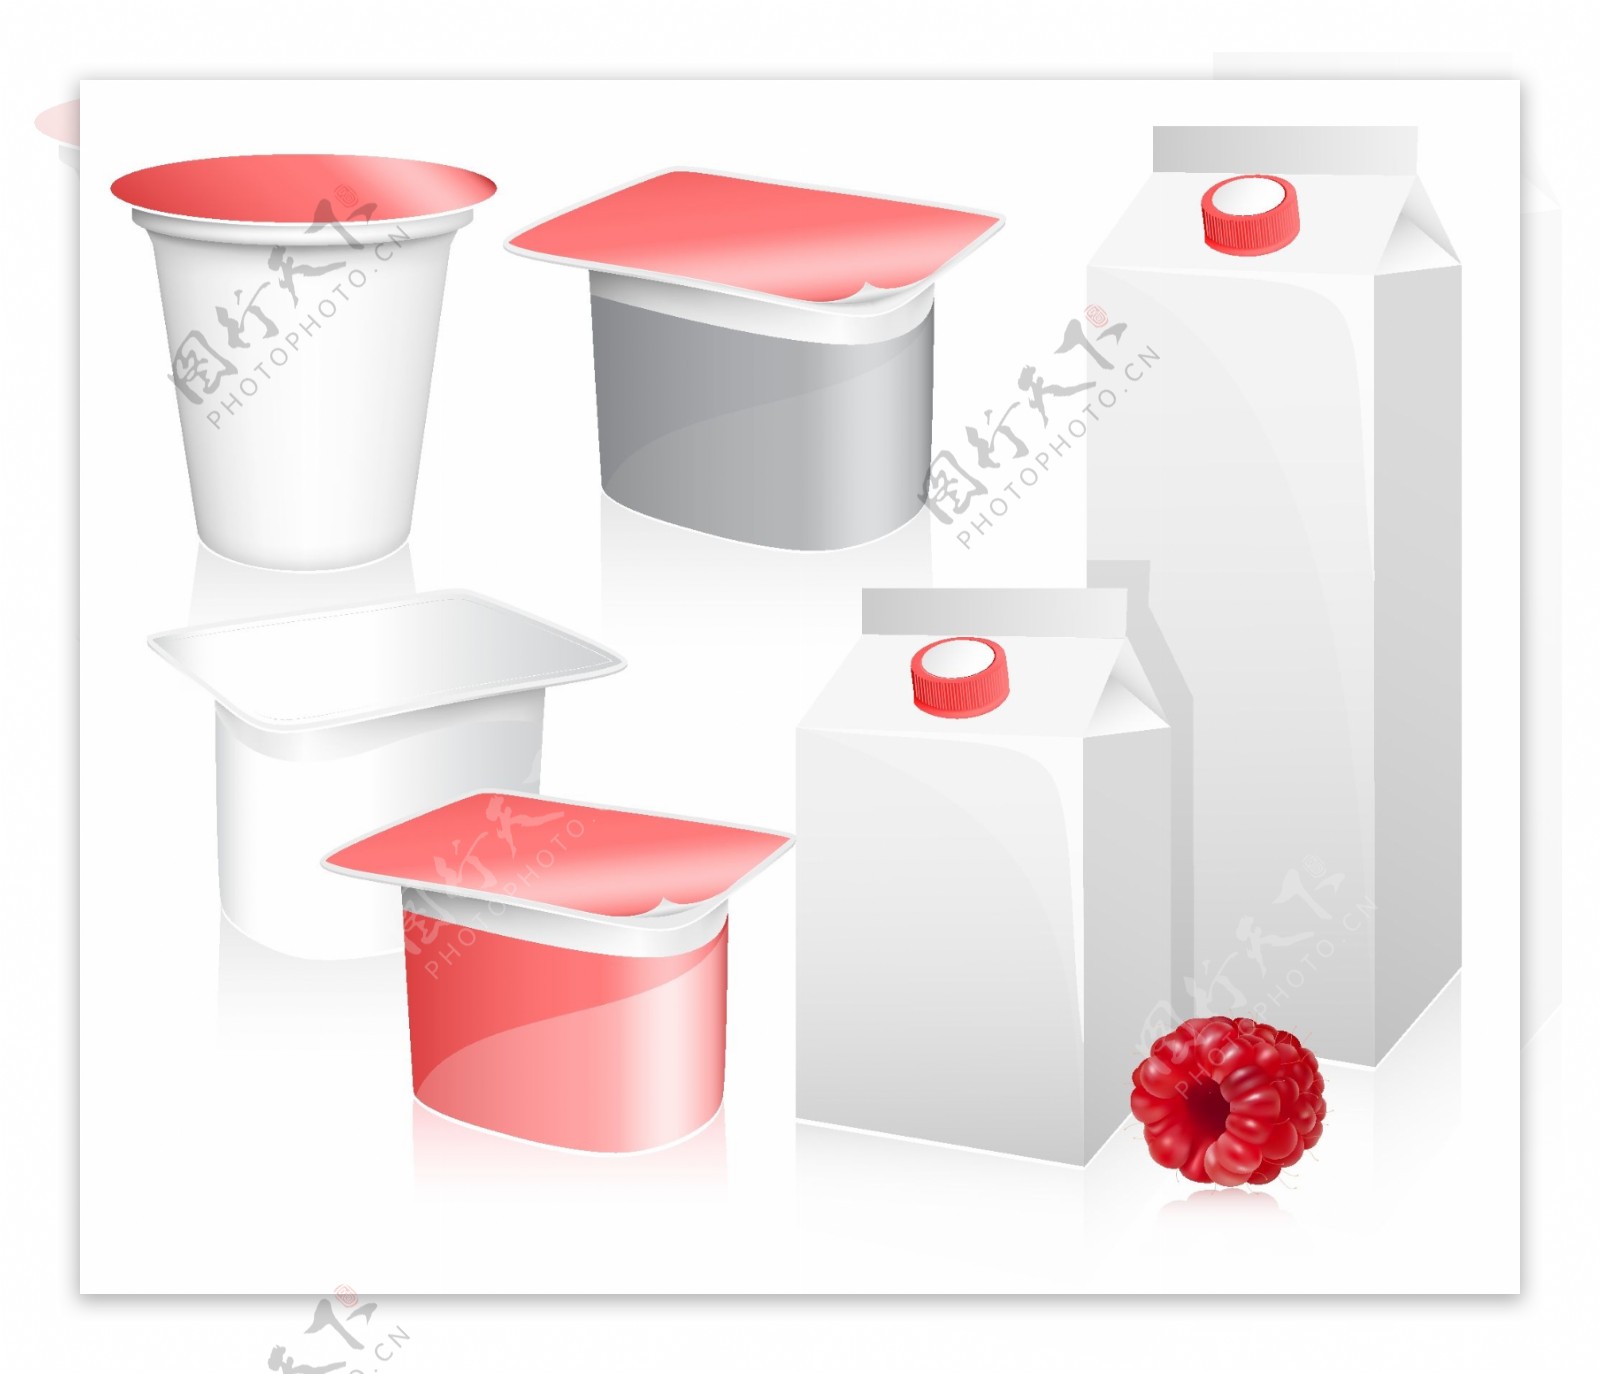 空白酸奶包装设计